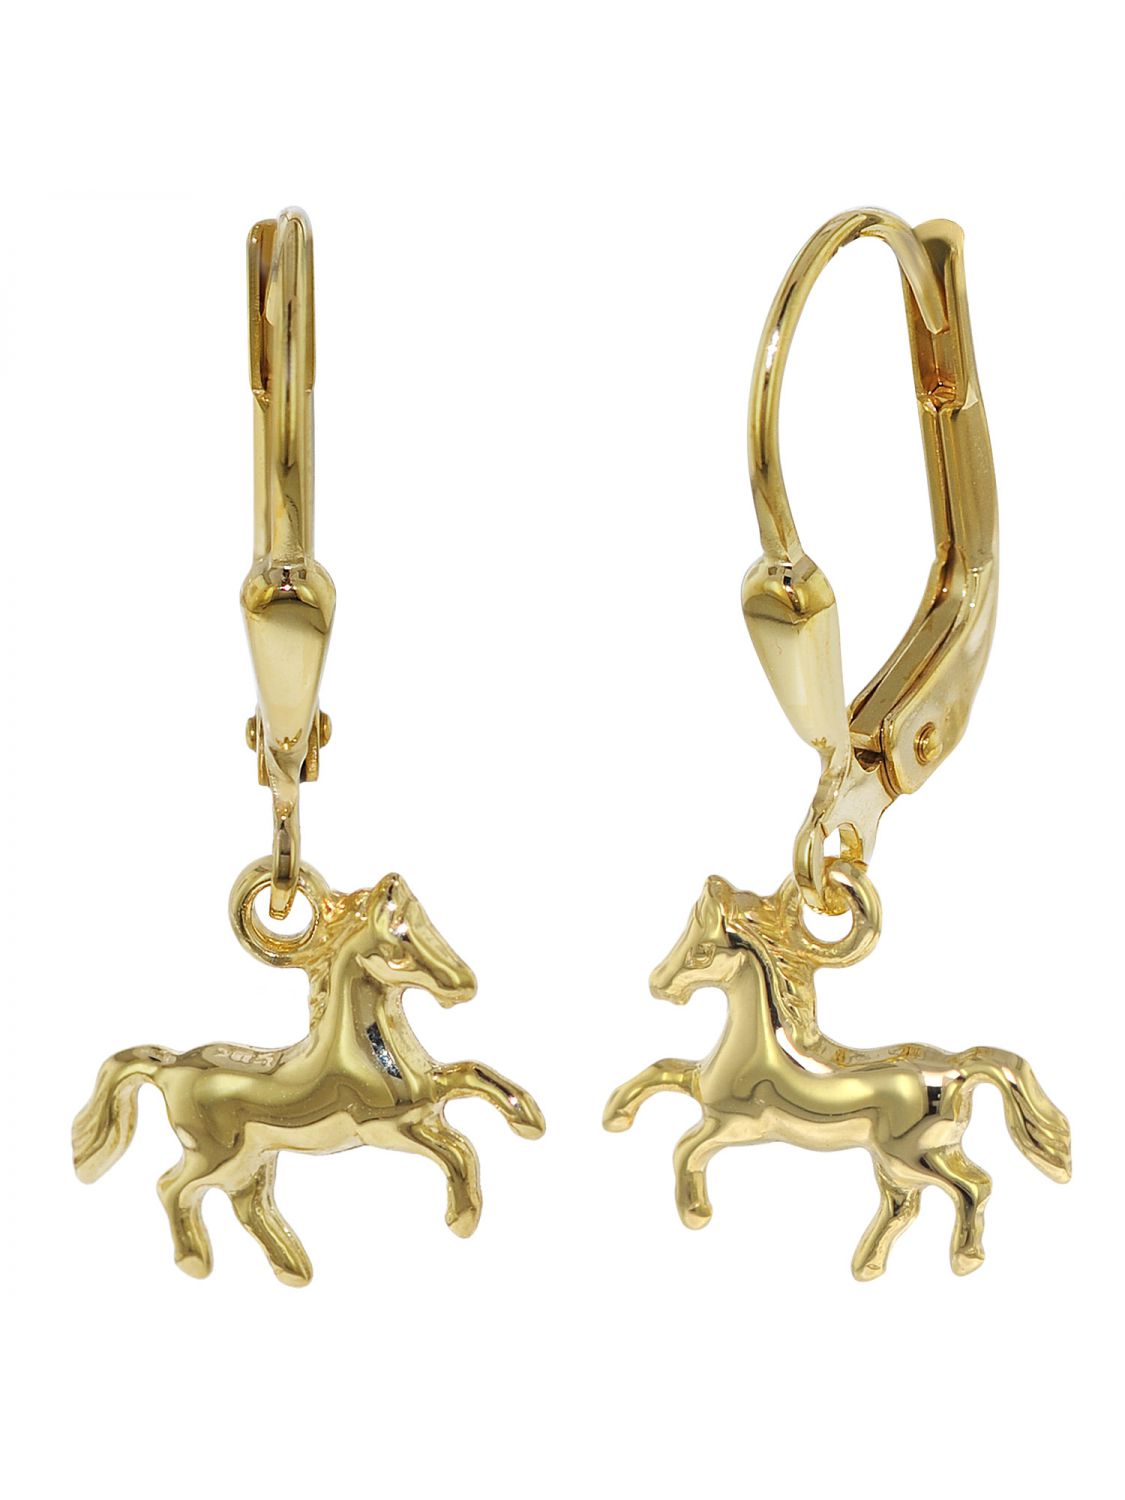 Mädchen Pony Pferde Ohrstecker Kinder Ohrringe Ponys aus Echt Gold 333 8 Kt 